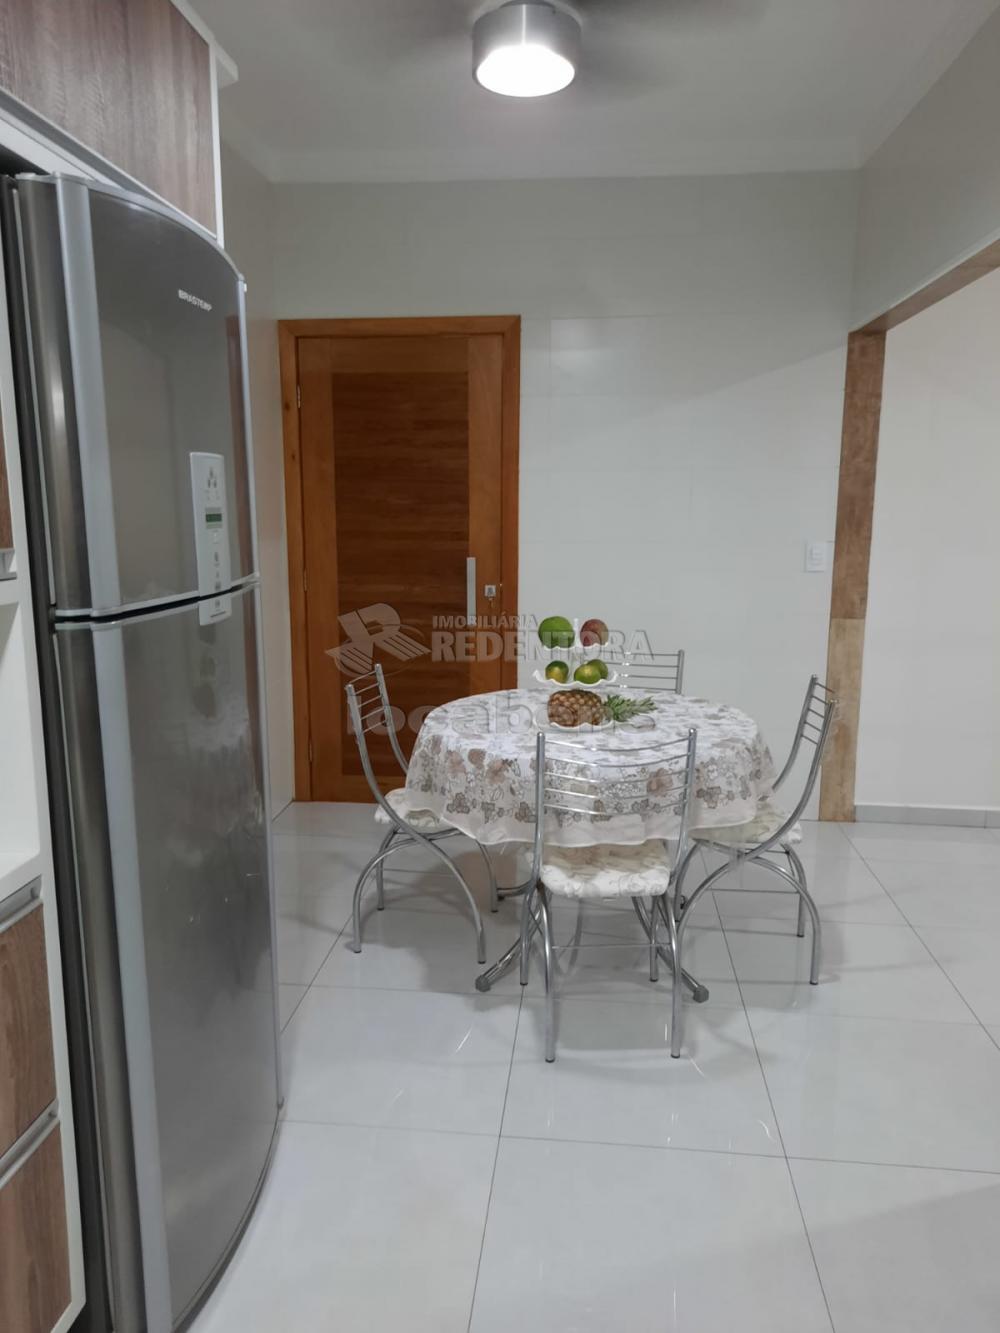 Comprar Casa / Padrão em São José do Rio Preto R$ 535.000,00 - Foto 8